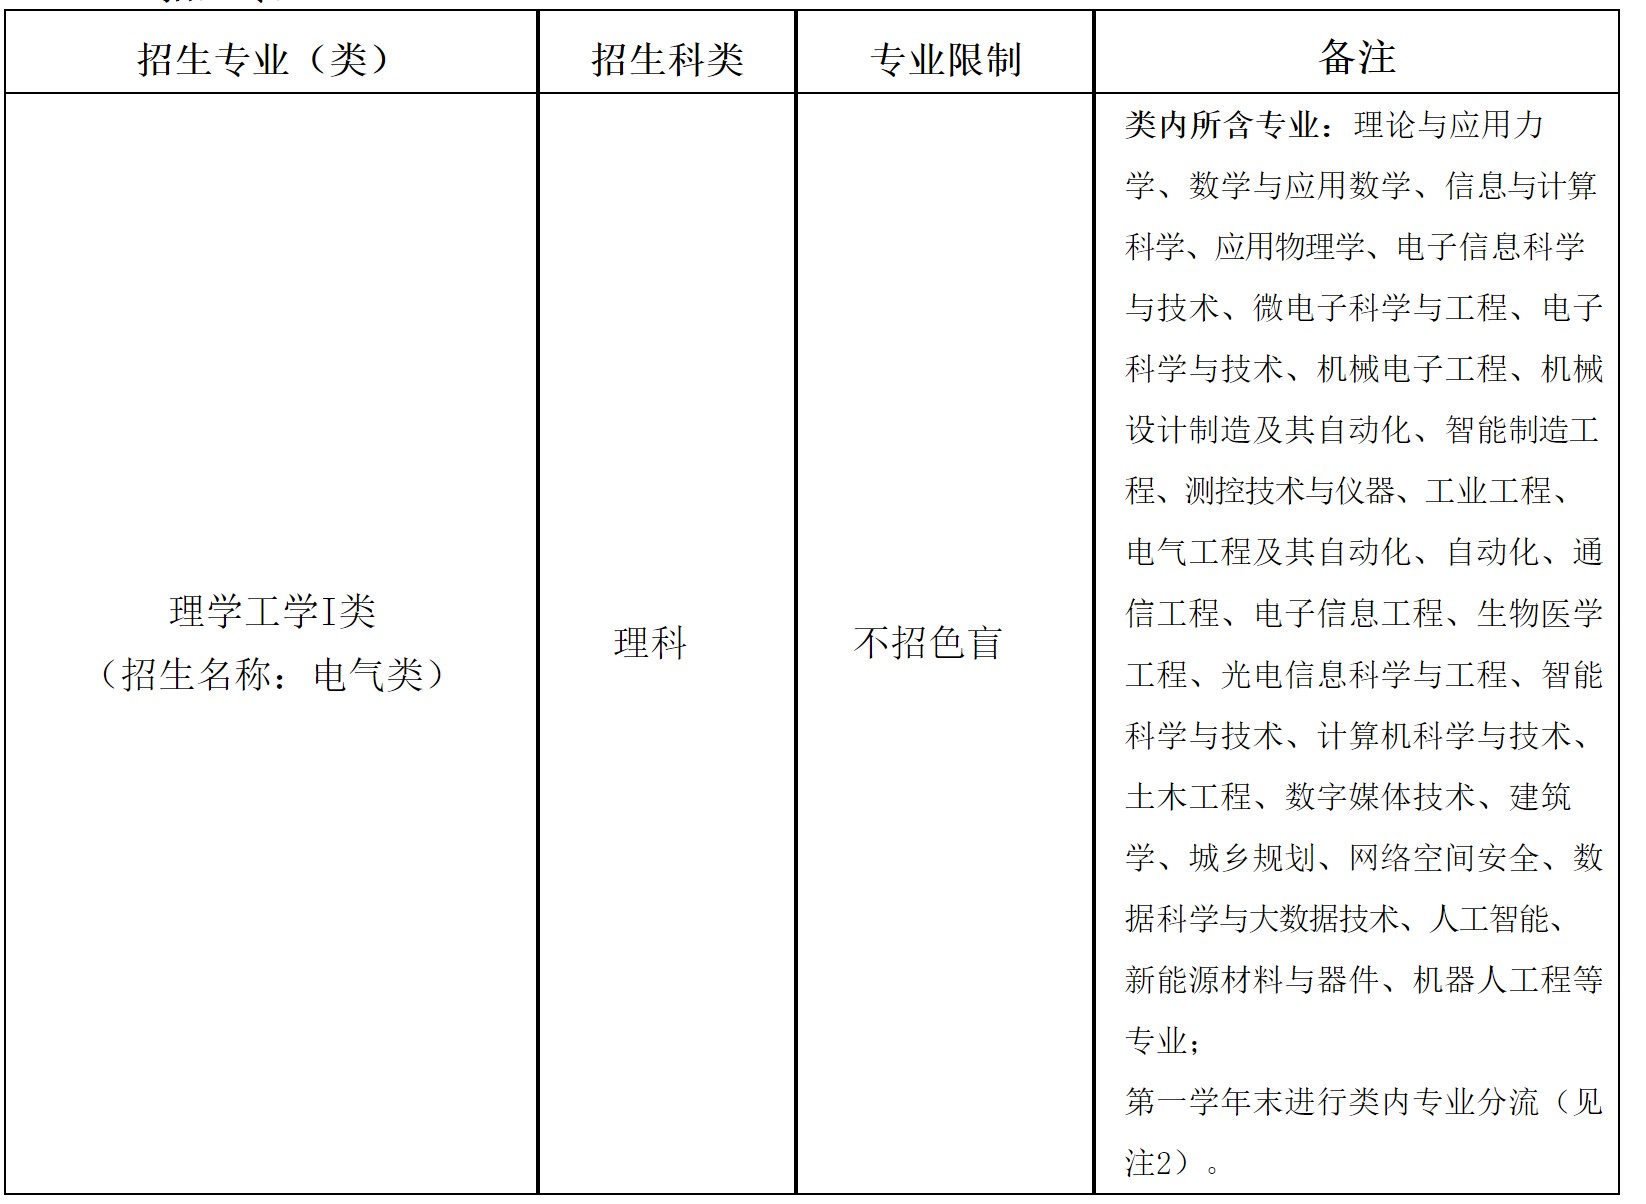 上海大学2022年高校专项计划暨“启航计划”招生章程